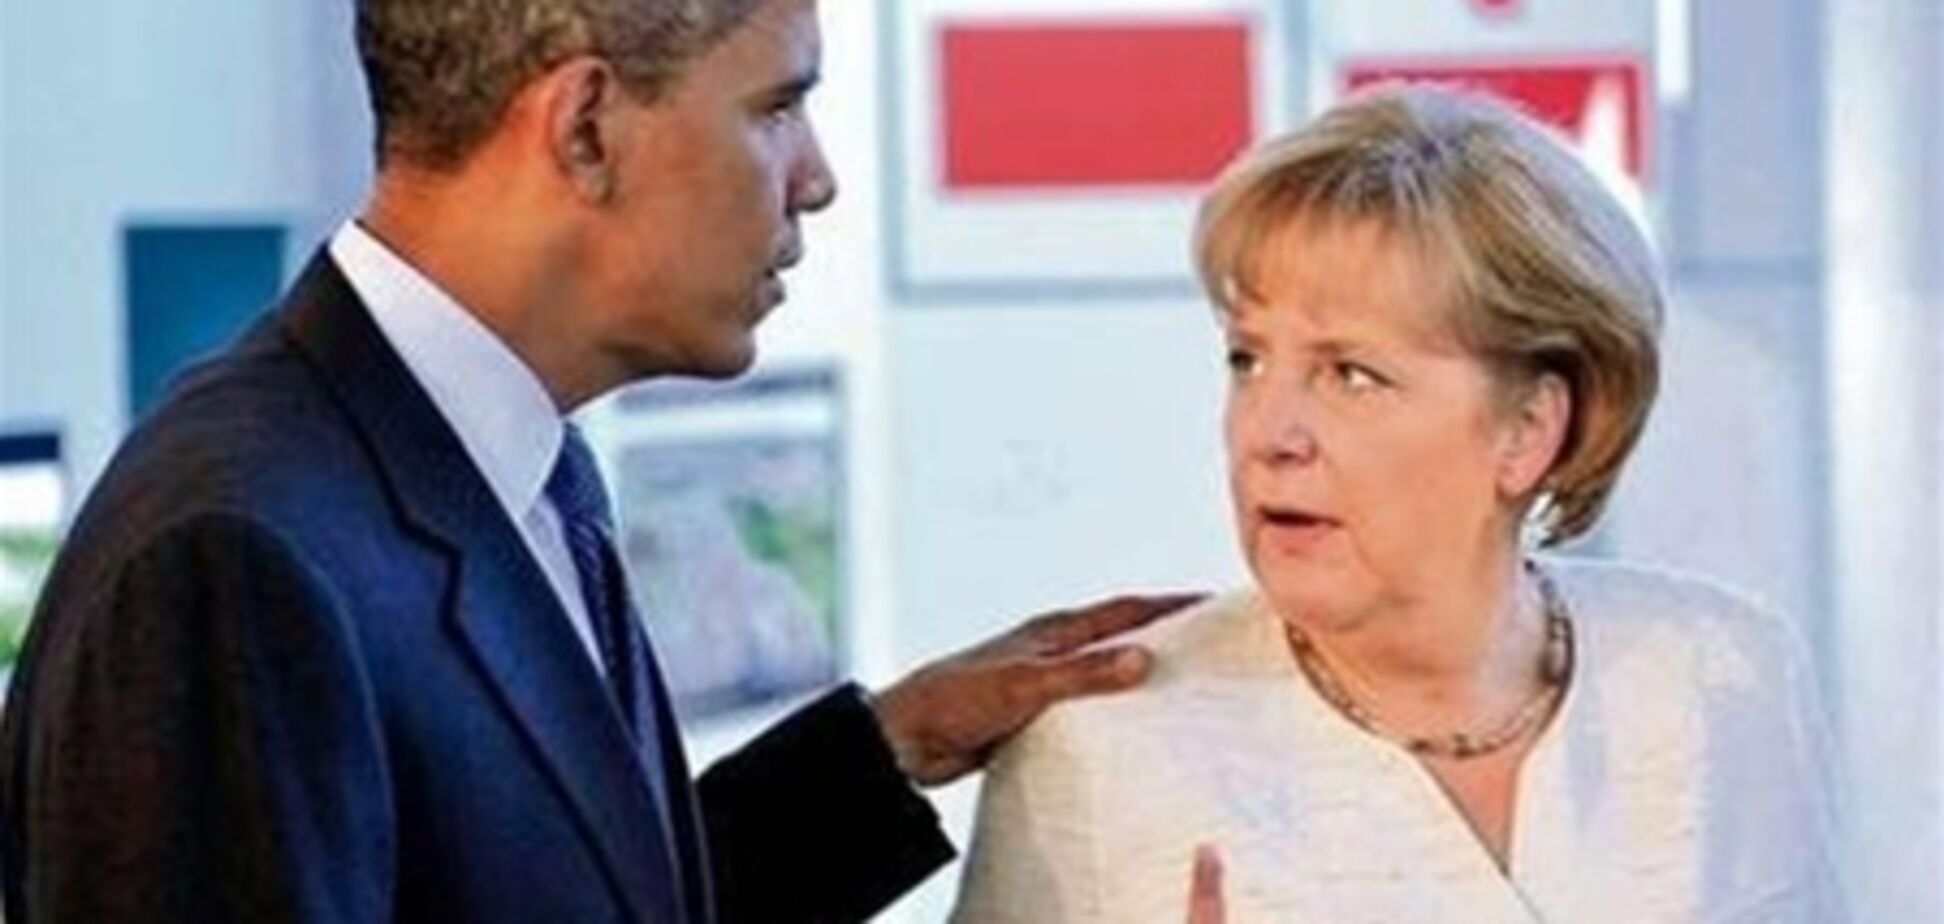 От Меркель требуют заставить Обаму прекратить интернет-слежку